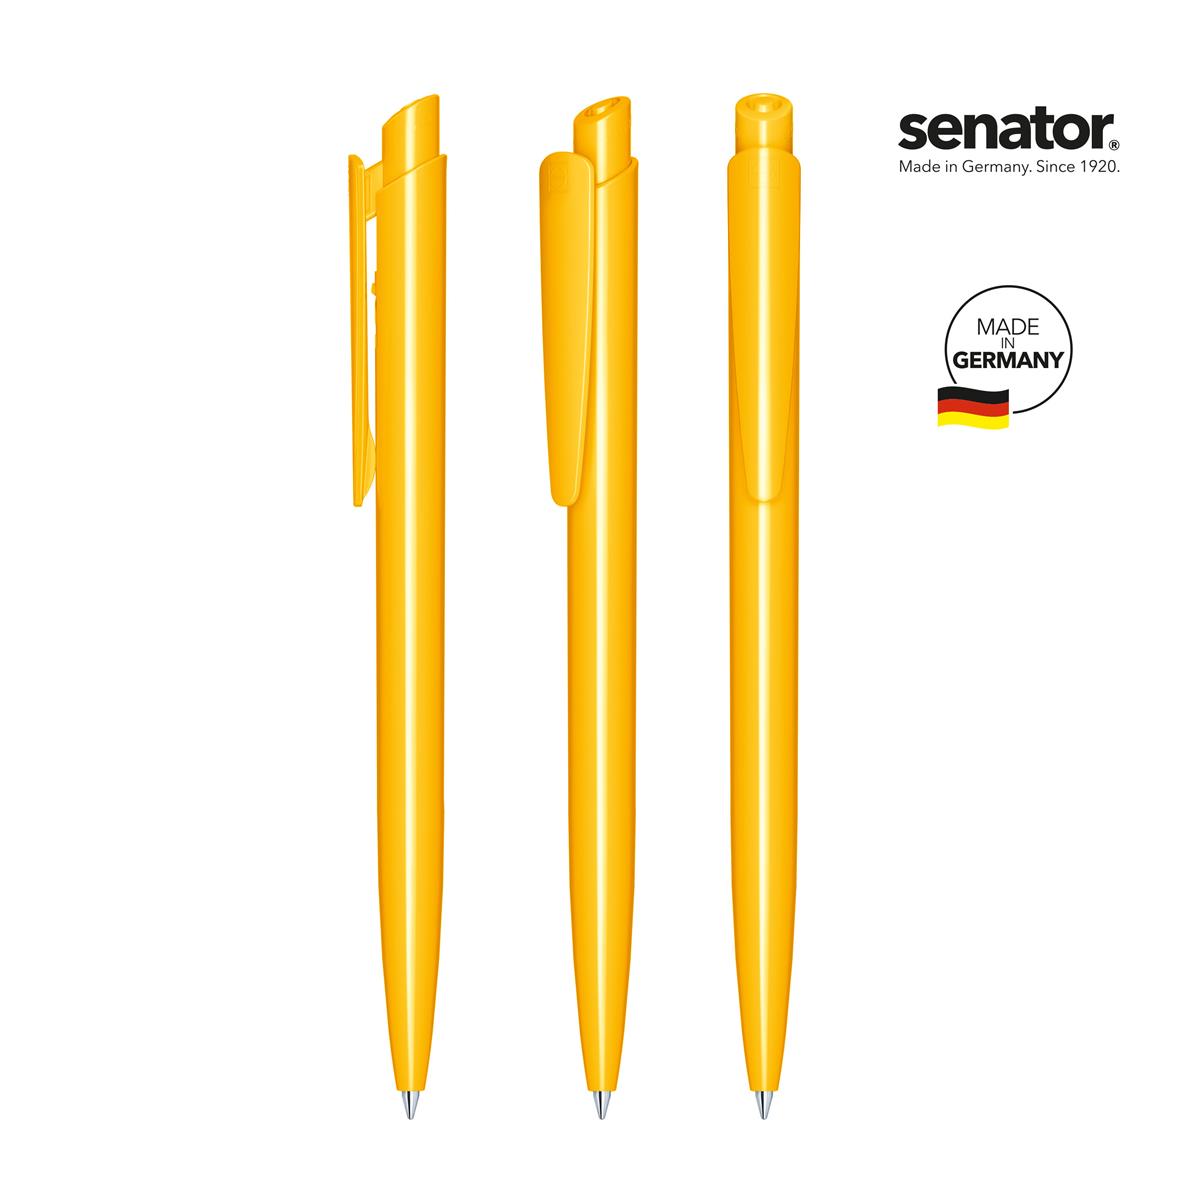 2600-senator-dart-polished-pms-7408-5-p